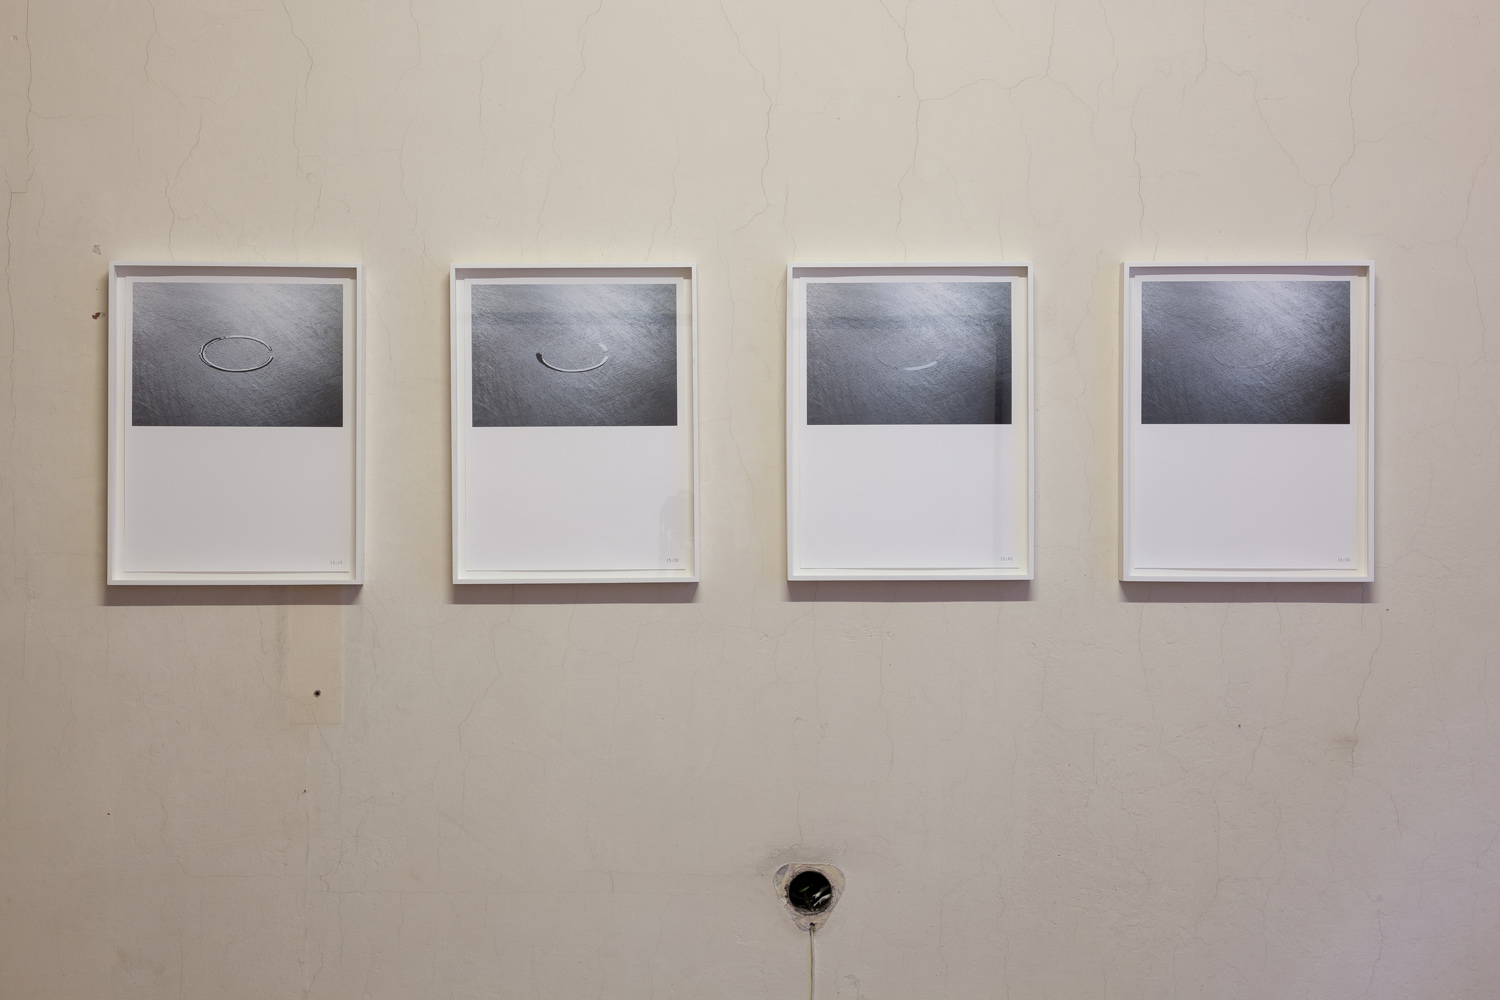 Mikko RikalaEvaporation of a circle, 2017Pigment print40 x 20 cm eachED 1/5 + 2 AP